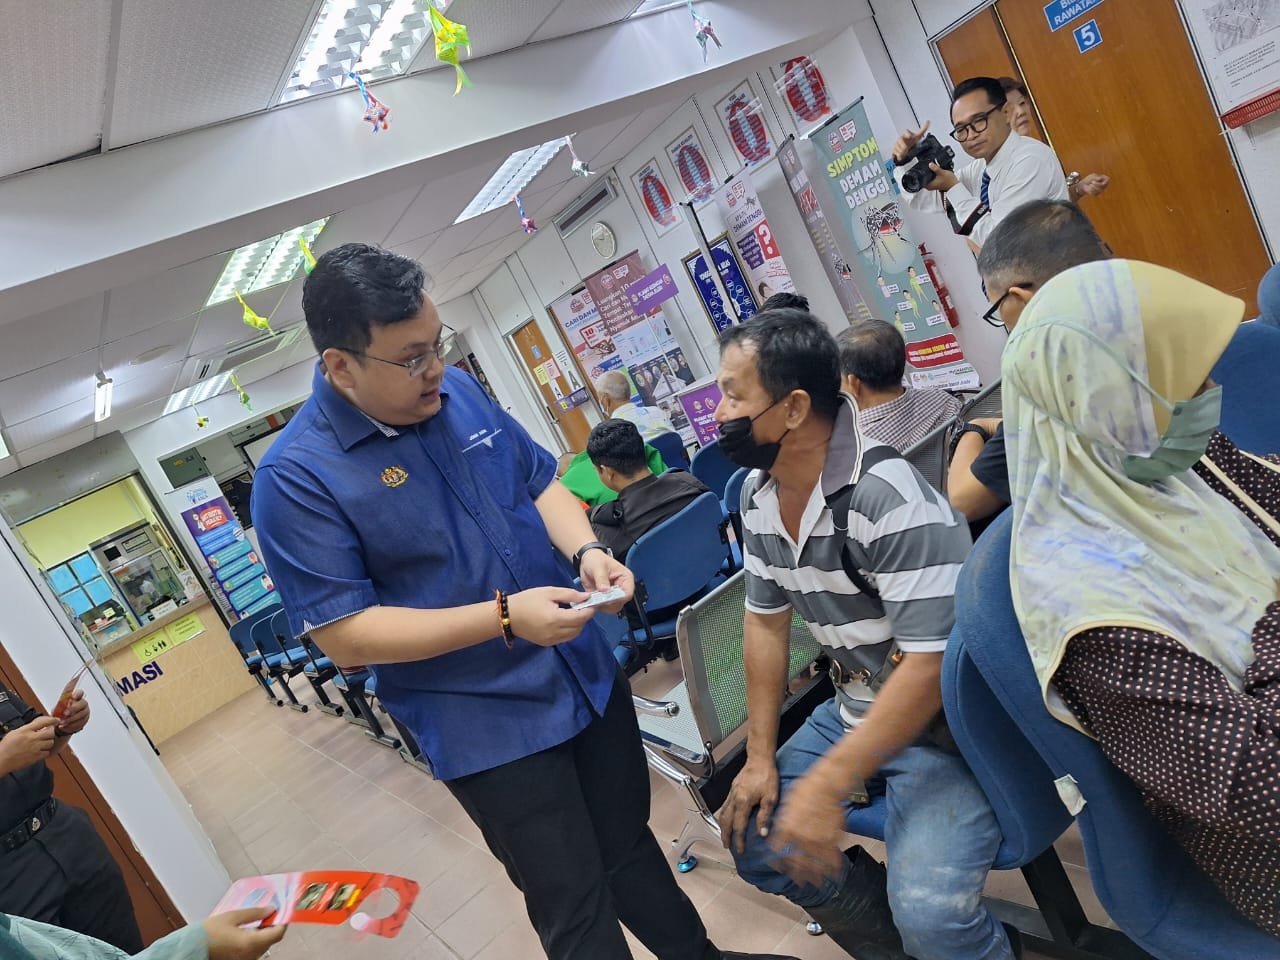 萧康骏协助当局派发灭蚊药给与到来的村民，让大家可以一起协助防止骨痛热症的发生。